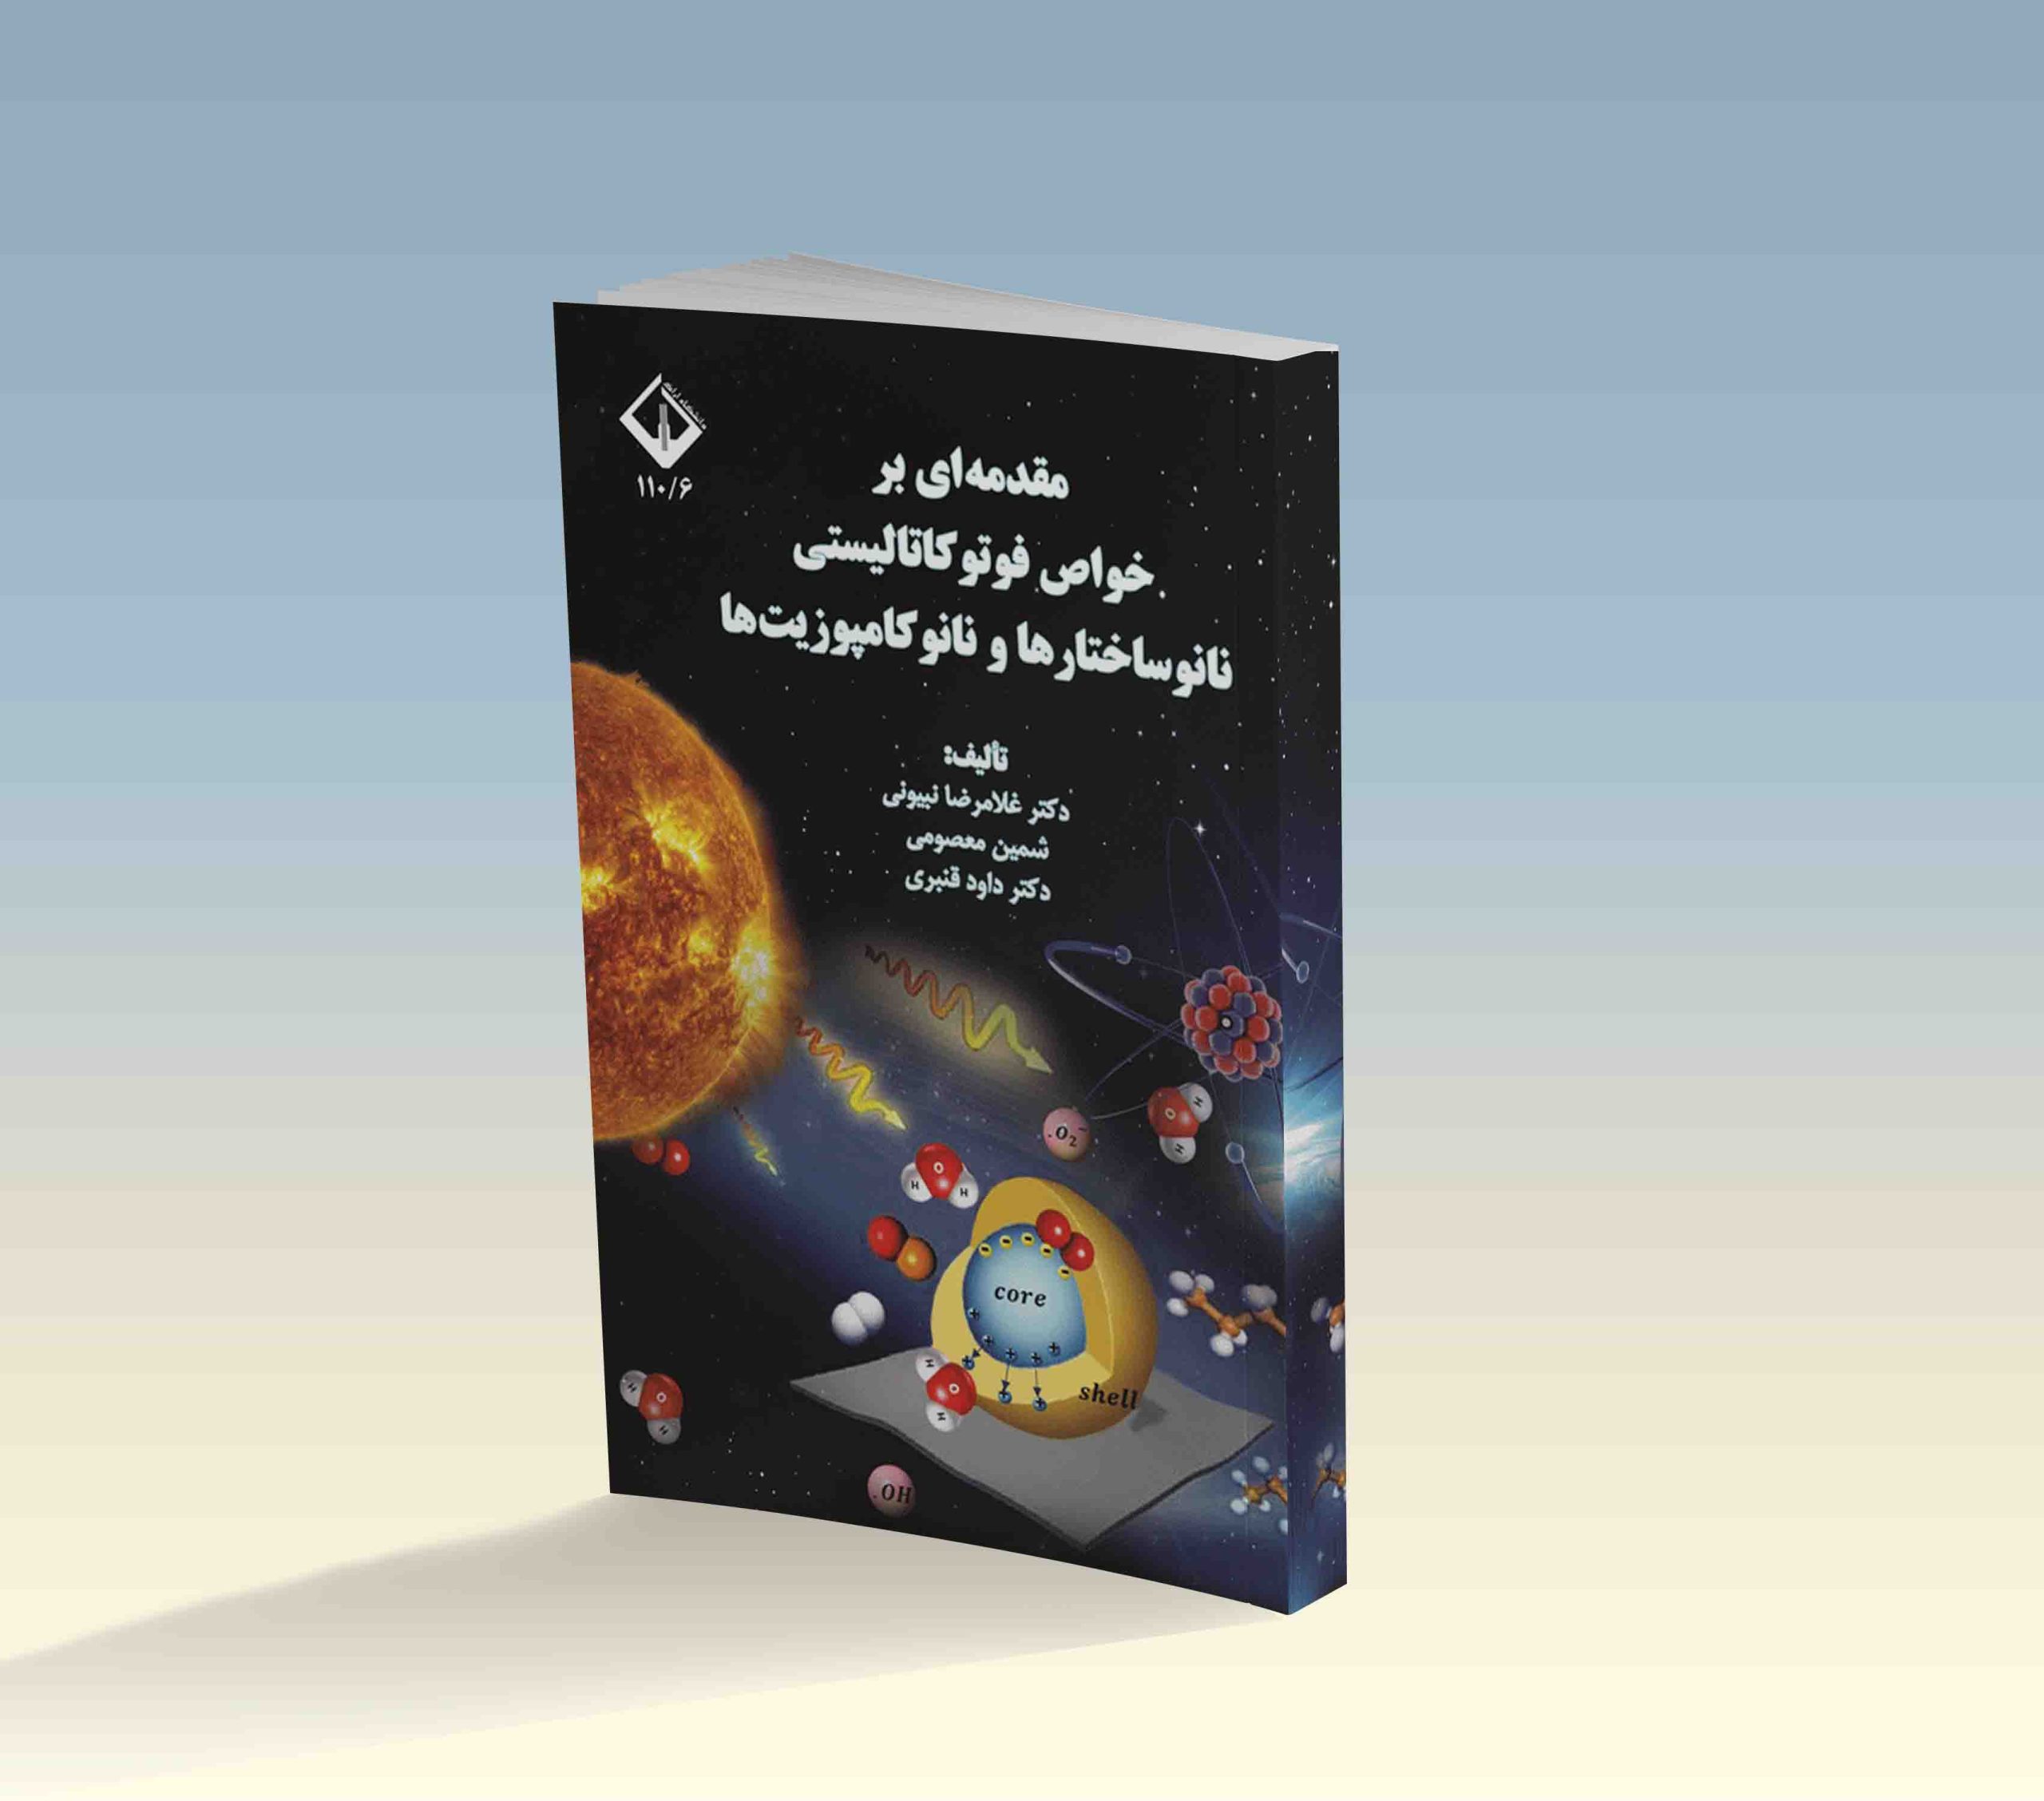 نویسندگان : دکتر غلامرضا نبیونی شمین معصومی دکتر داود قنبری